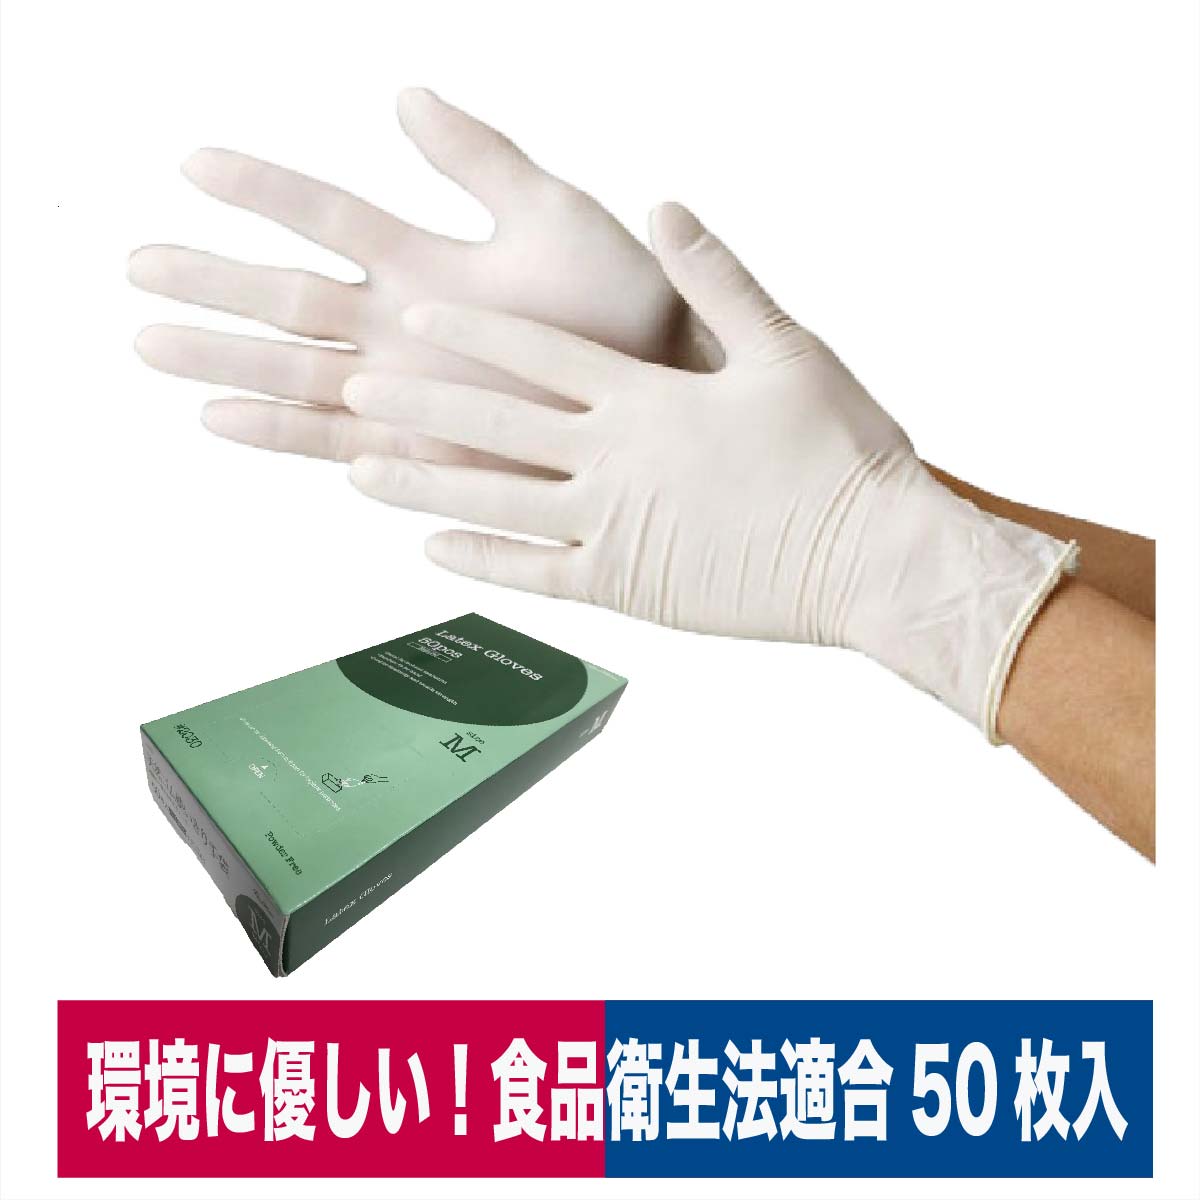 使い捨て手袋 天然ゴム 極薄手袋 50枚入り 食品加工 清掃 介護 粉なし S/M/L 川西工業 2030 | ワークウェイ